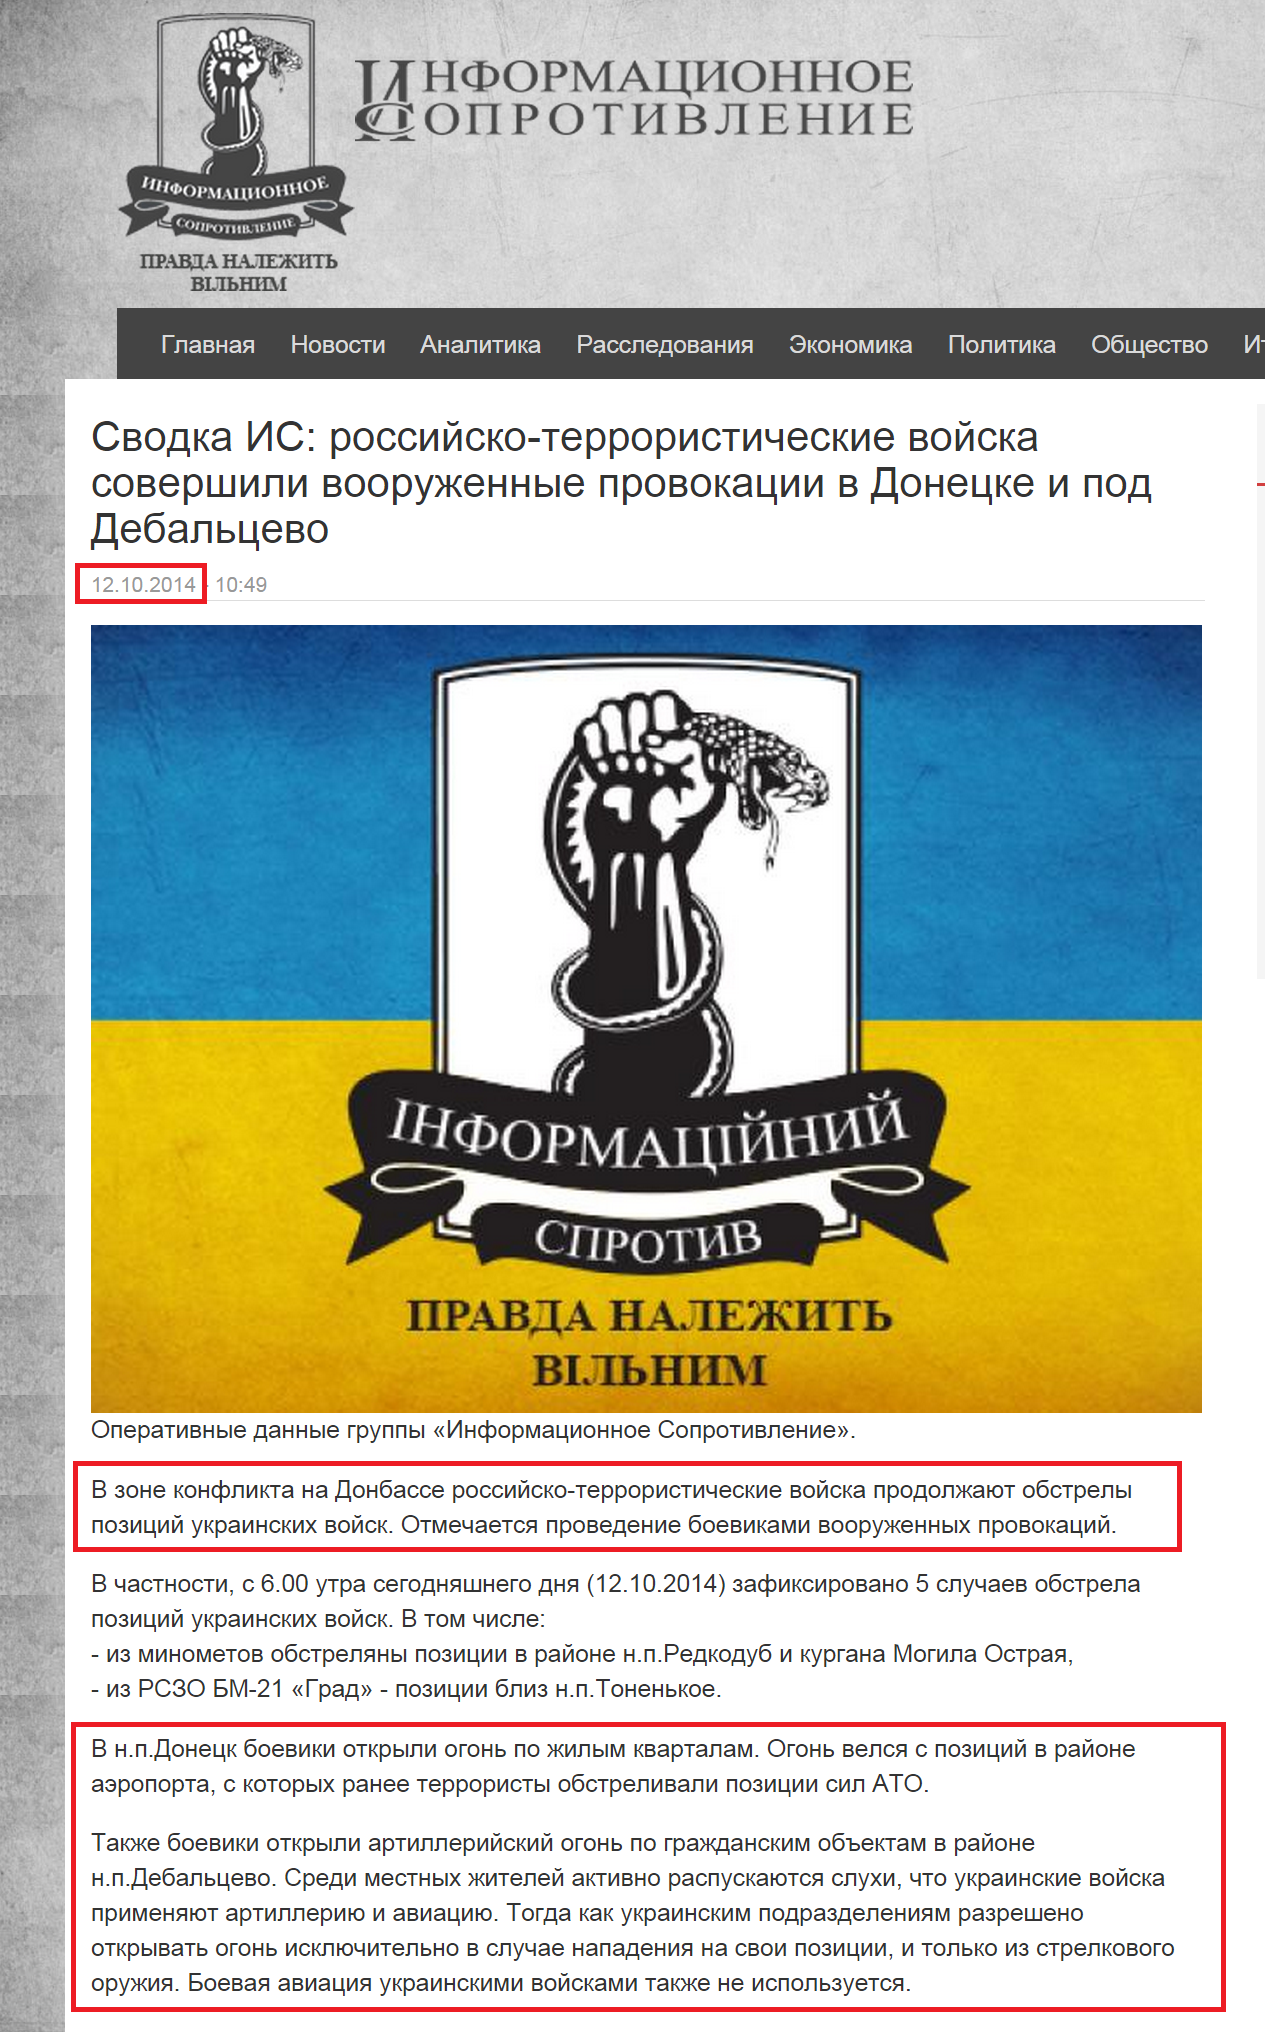 http://sprotyv.info/ru/news/6373-svodka-rossiysko-terroristicheskie-voyska-sovershili-vooruzhennye-provokacii-v-donecke-i